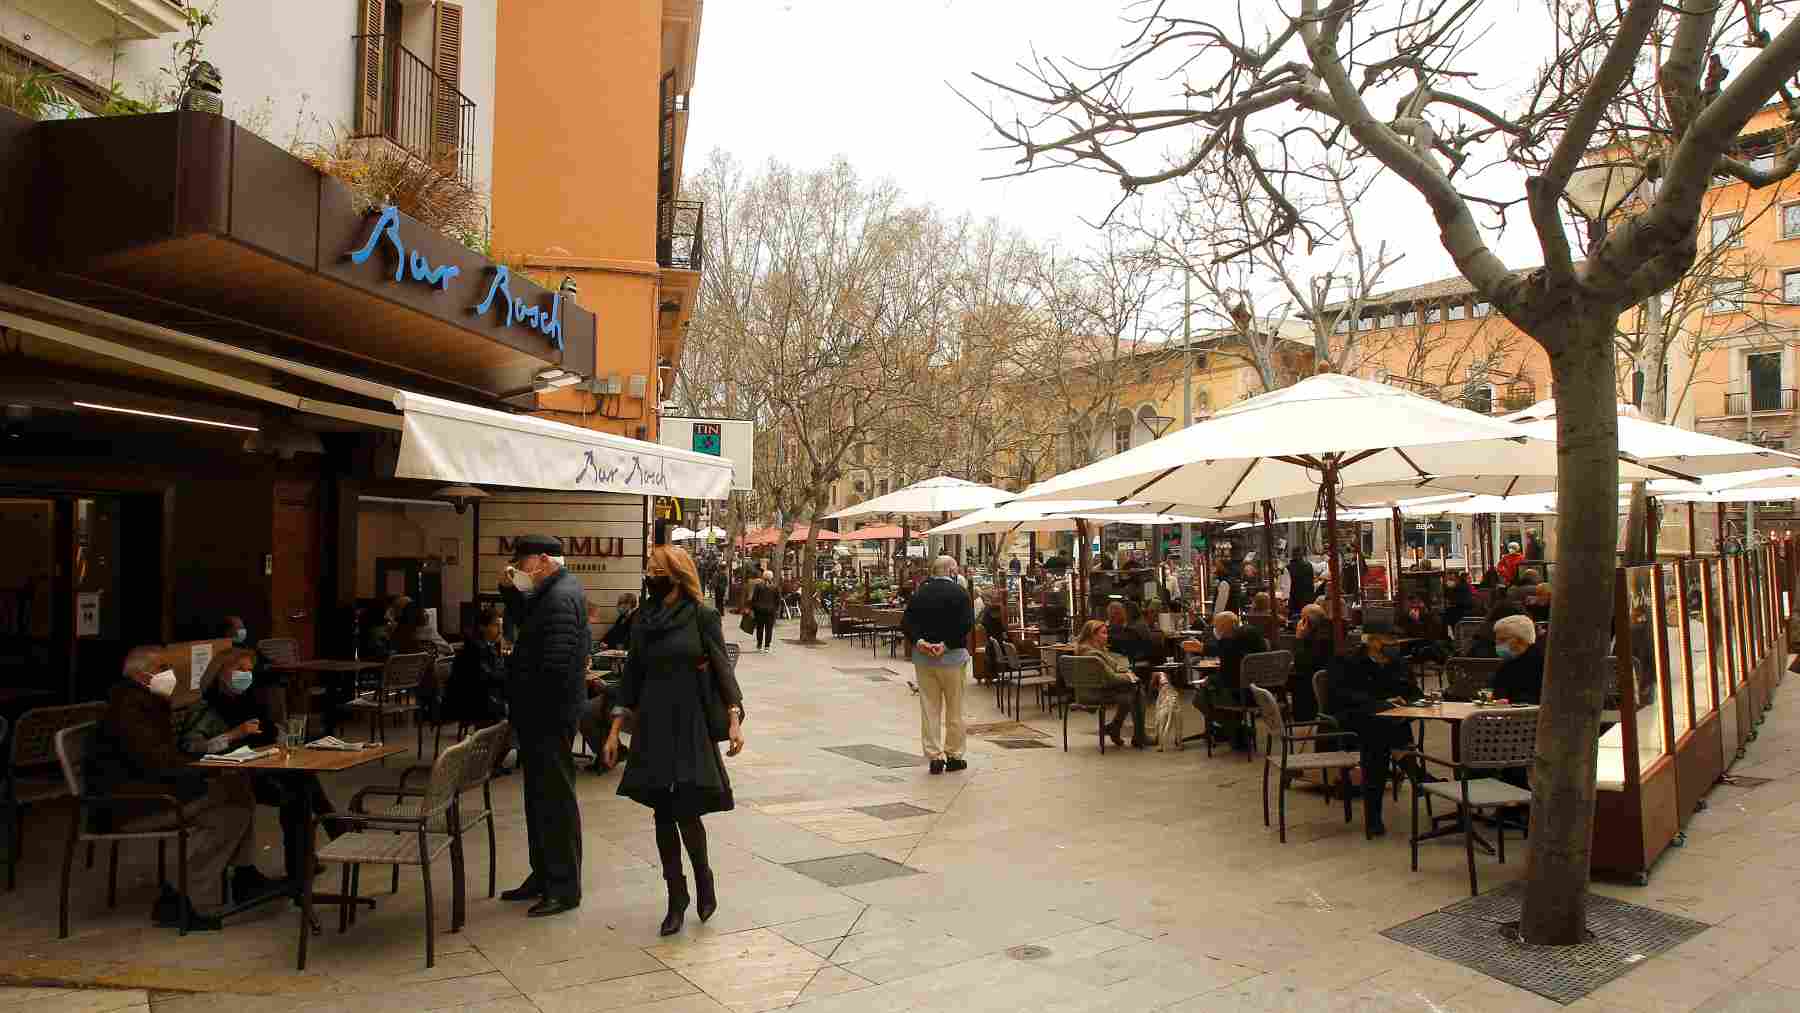 La terraza de un bar en Palma. Foto: Isaac Buj / Europa Press.